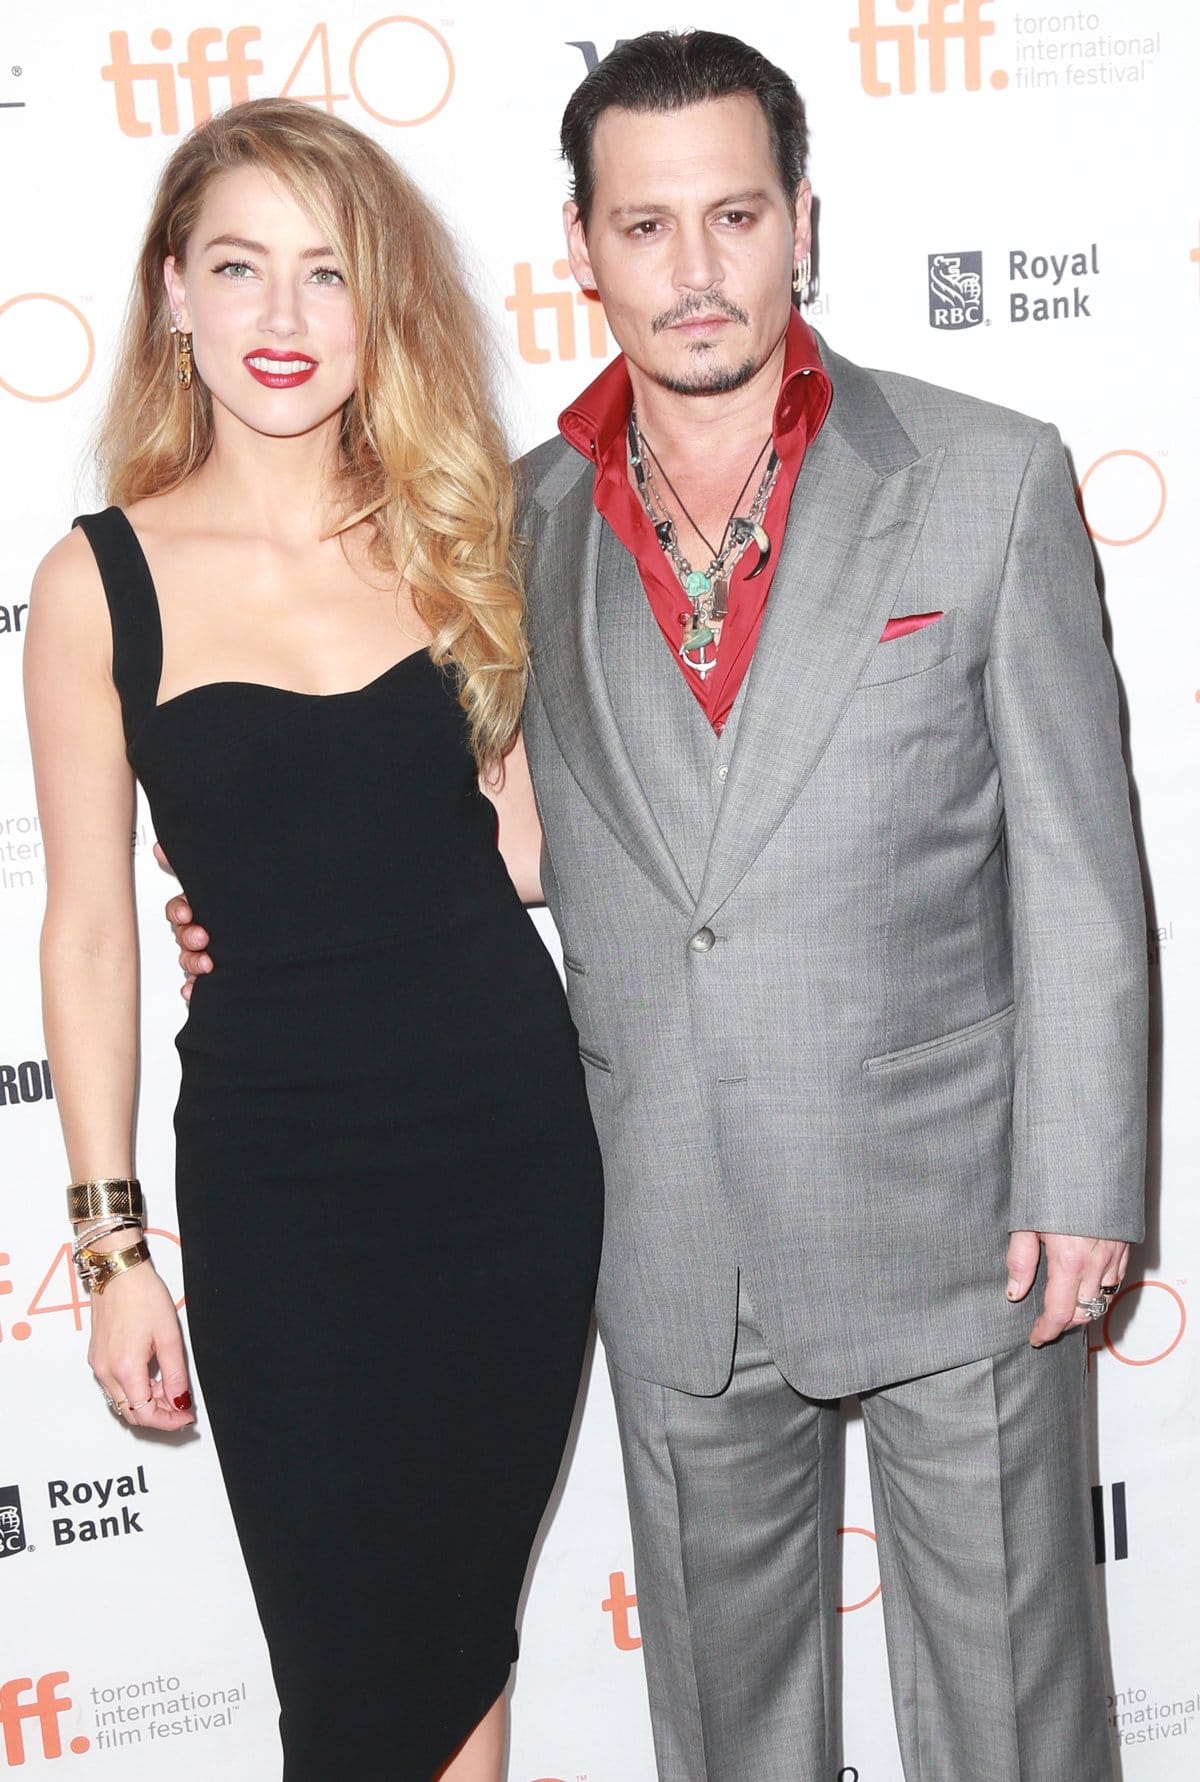 Even when wearing high heels, Amber Heard is shorter than her ex-husband Johnny Depp